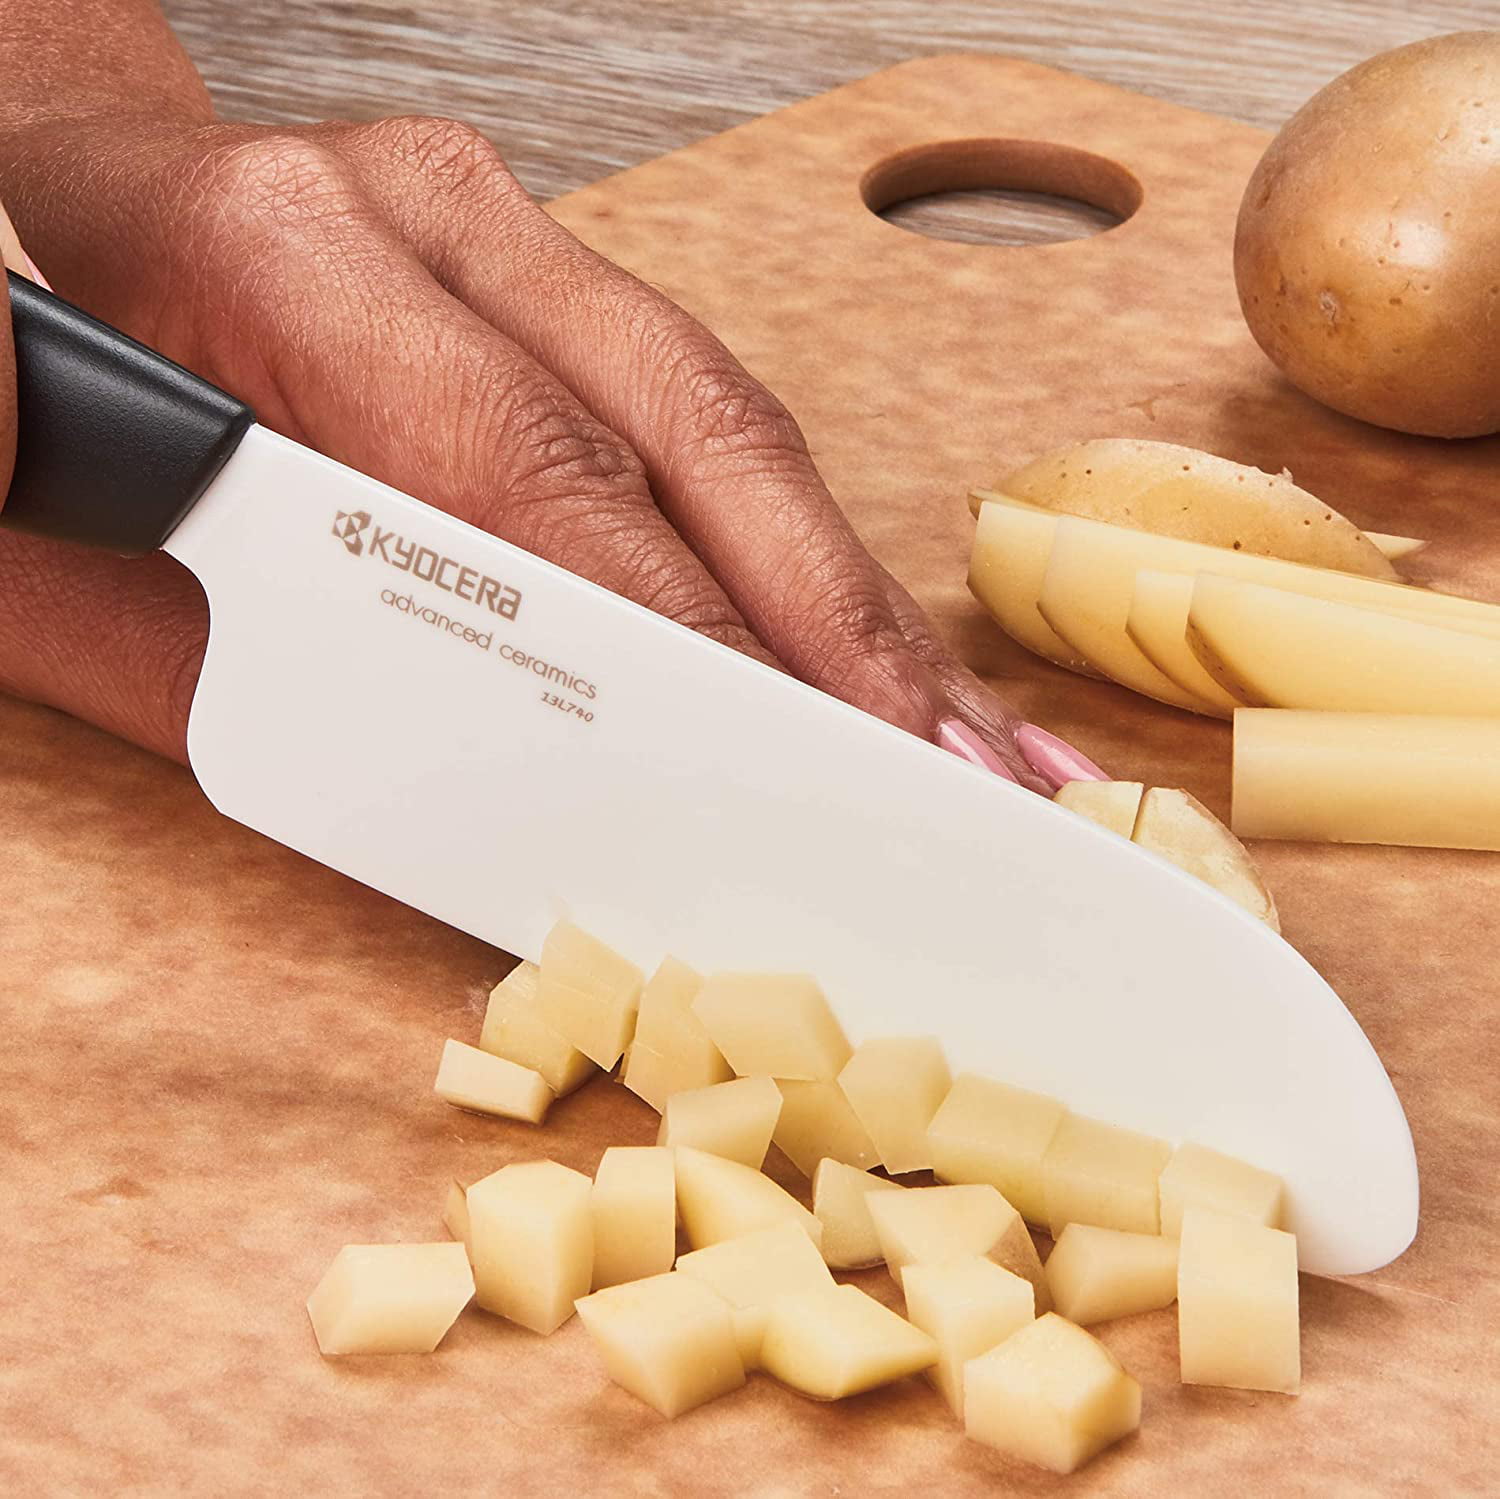 KYOCERA > Kyocera ultra-sharp lightweight, elegant ceramic steak knives